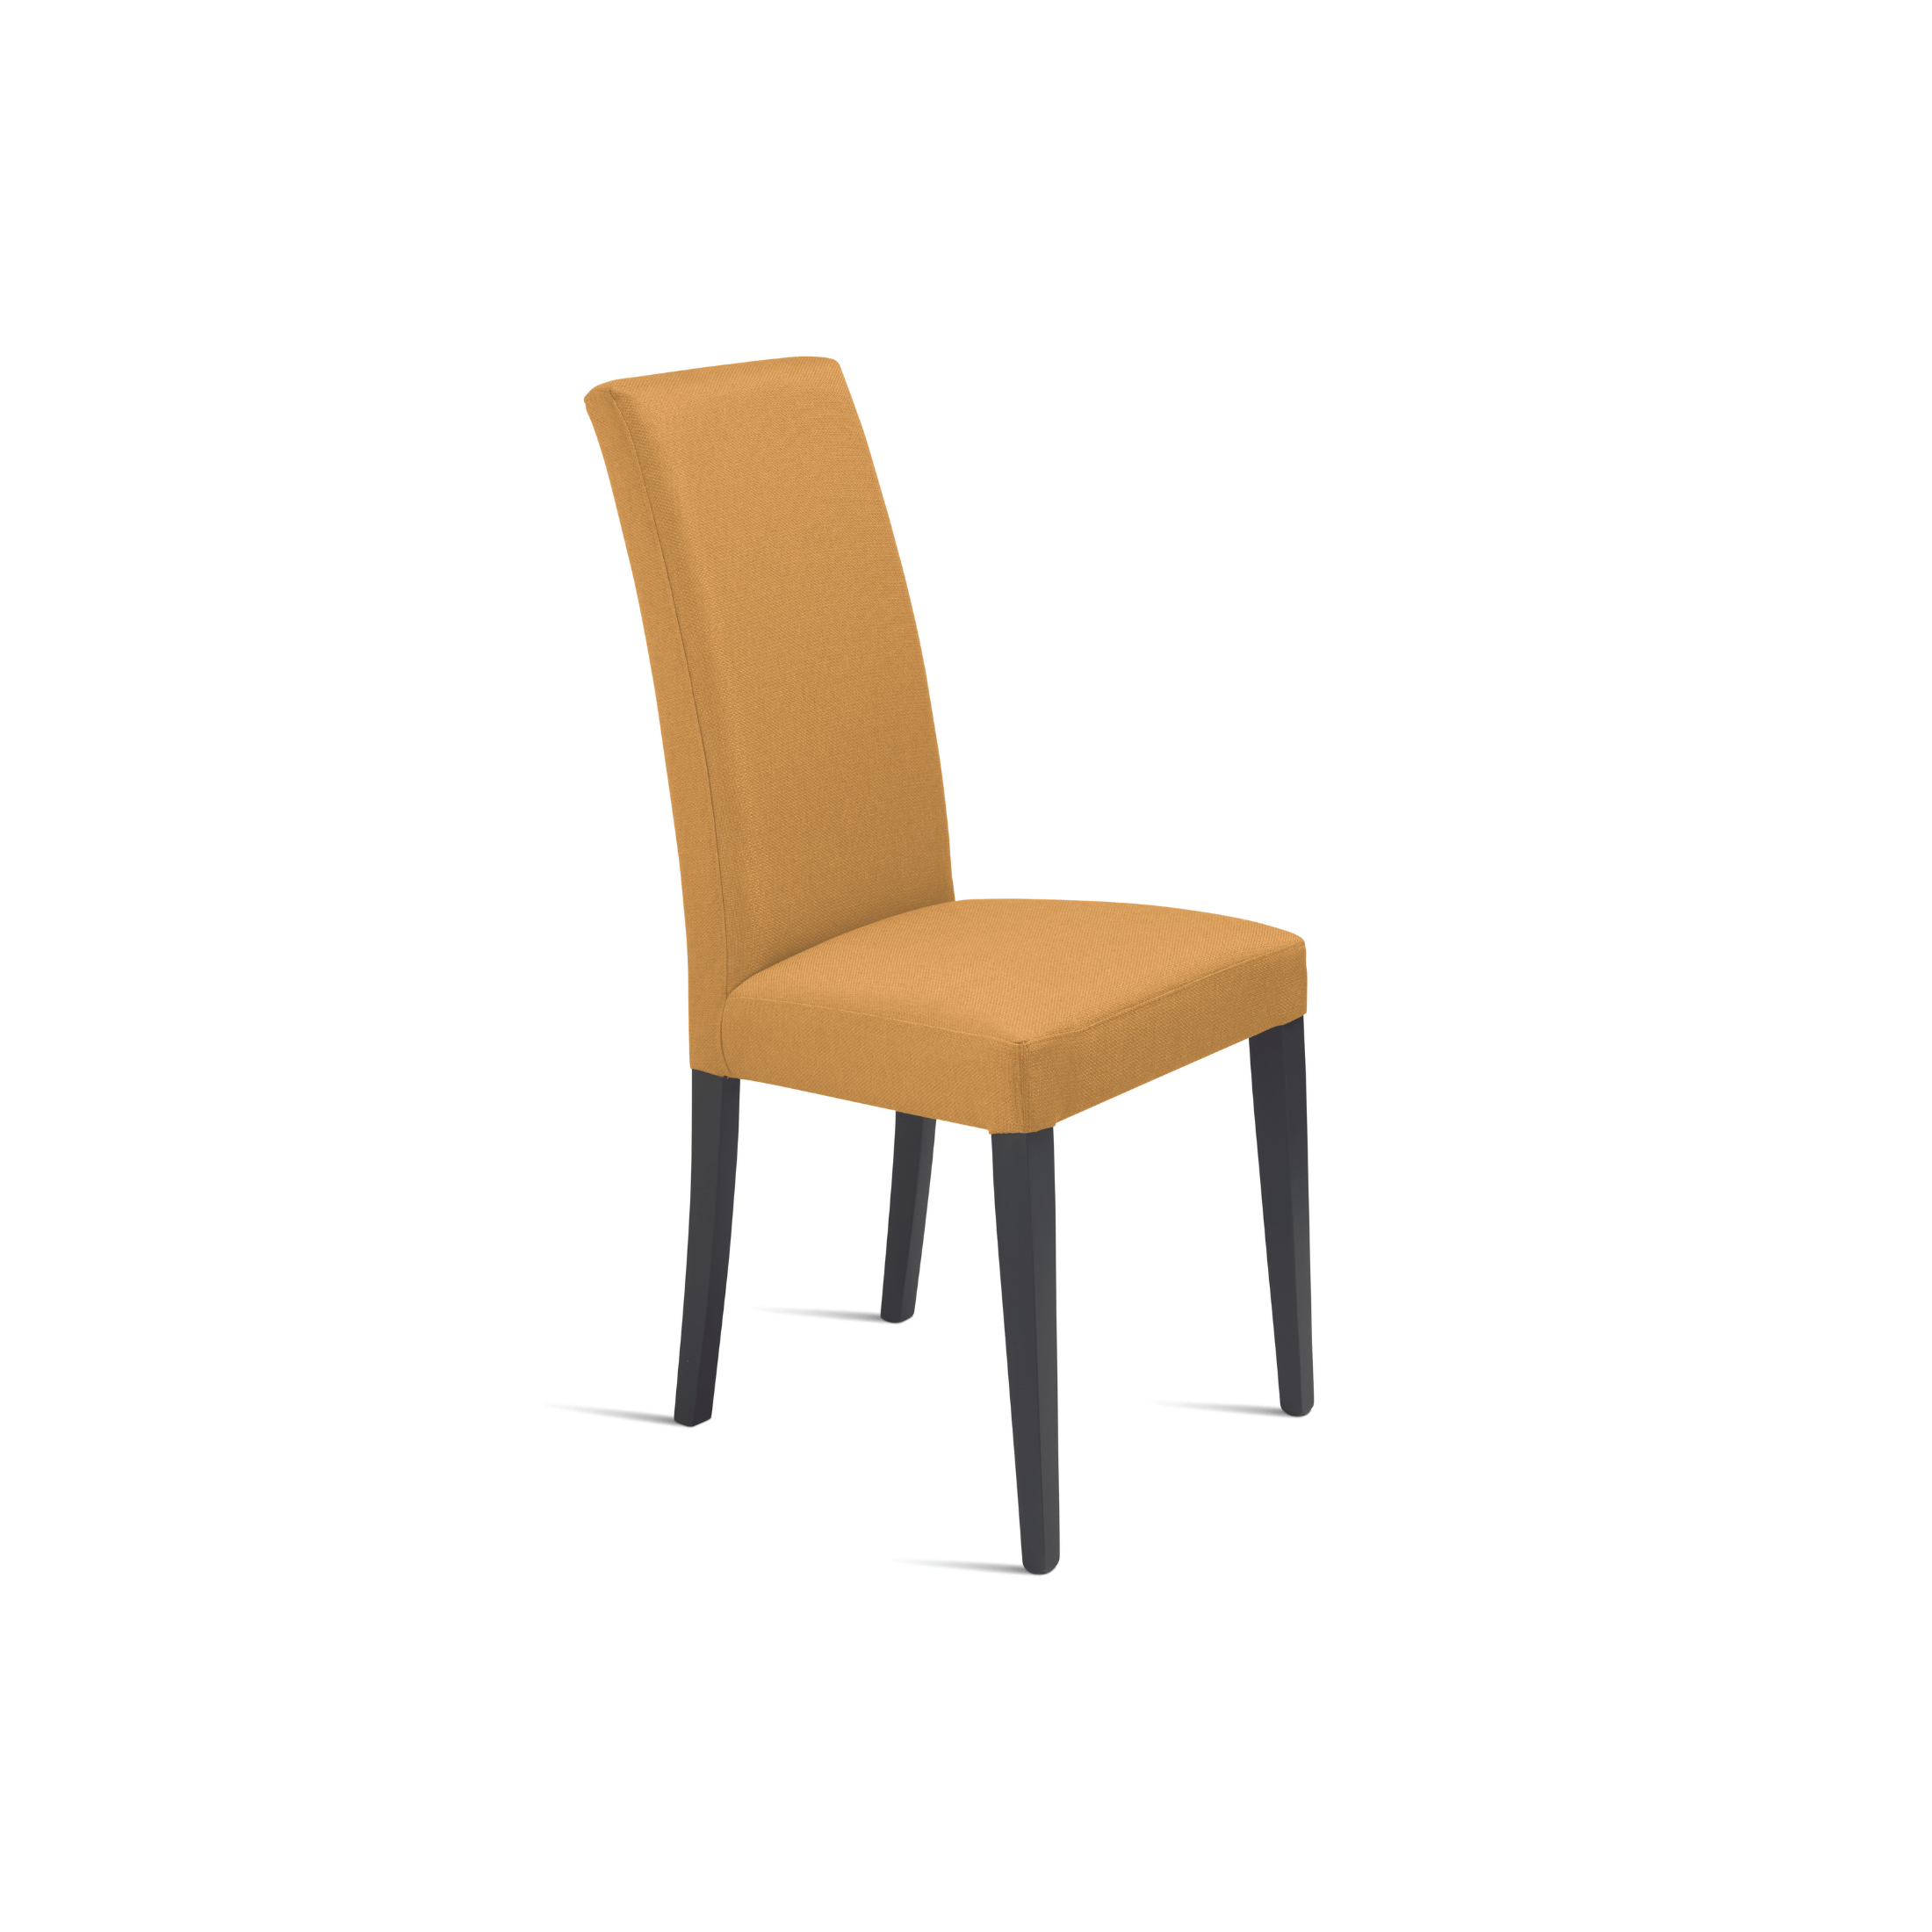 Set sedie eleganti in tessuto imbottito "Denver" da soggiorno con gambe in legno